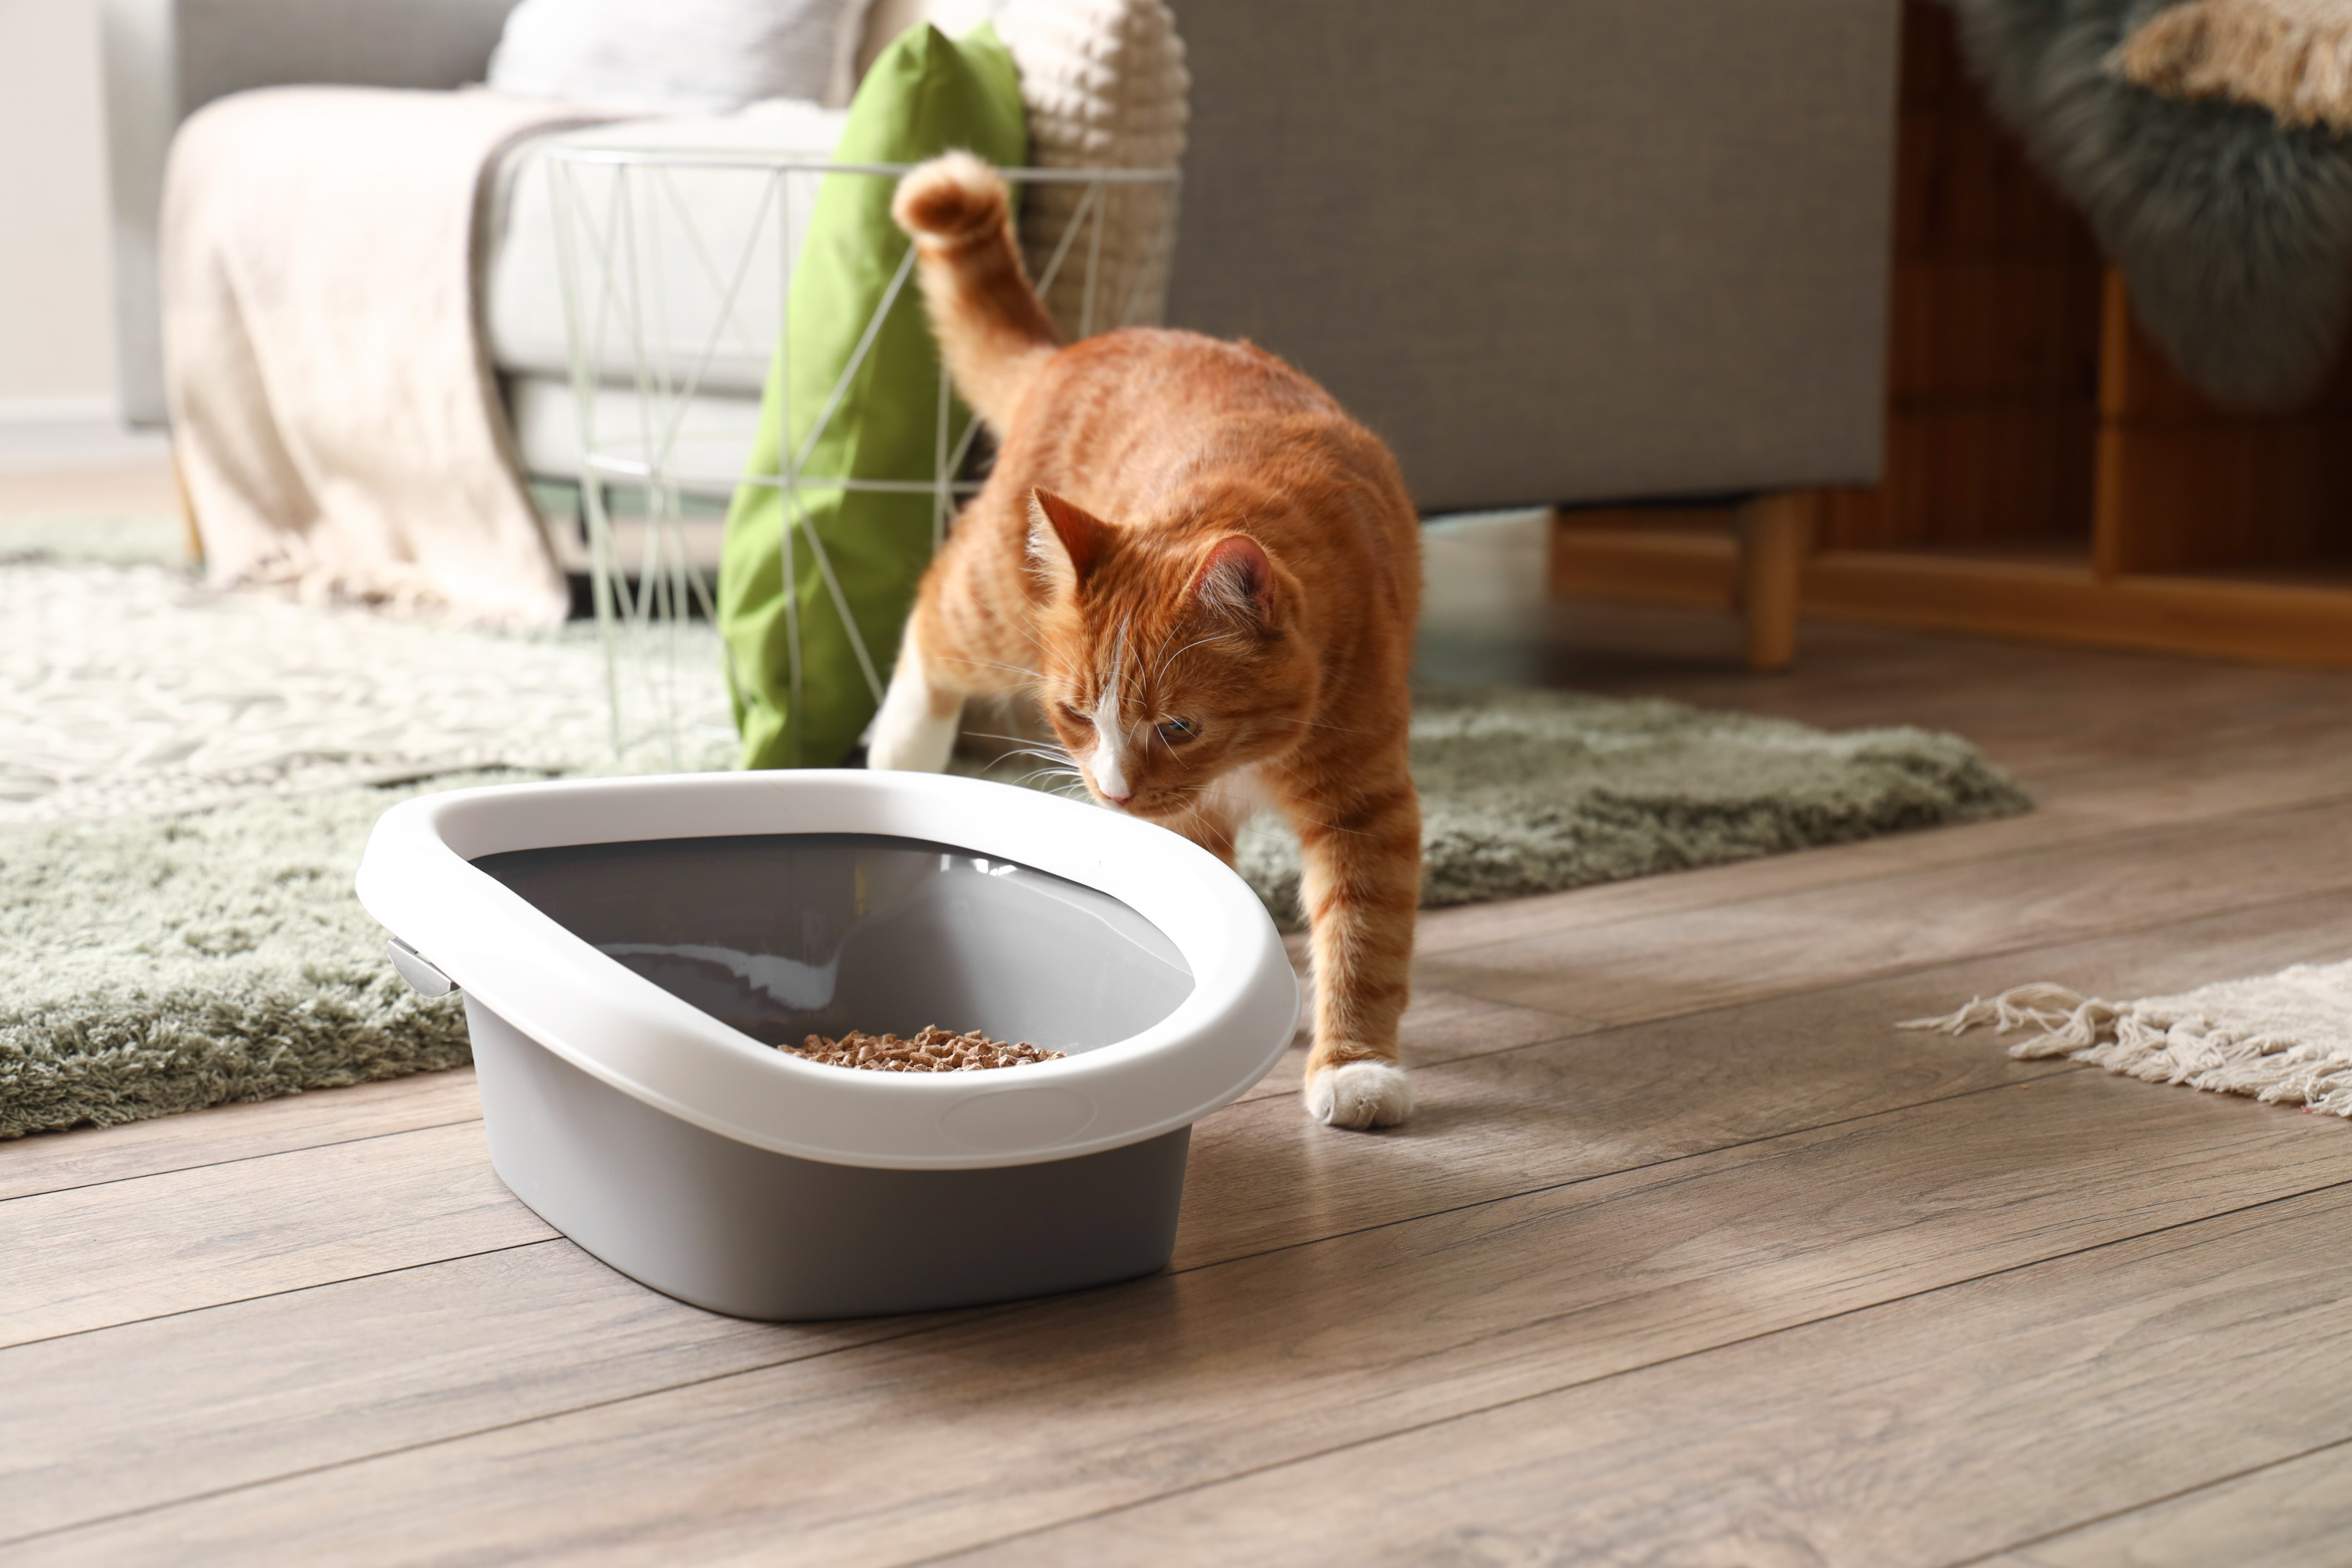 Désodorisant litière chat Pin, neutralise les mauvaises odeurs